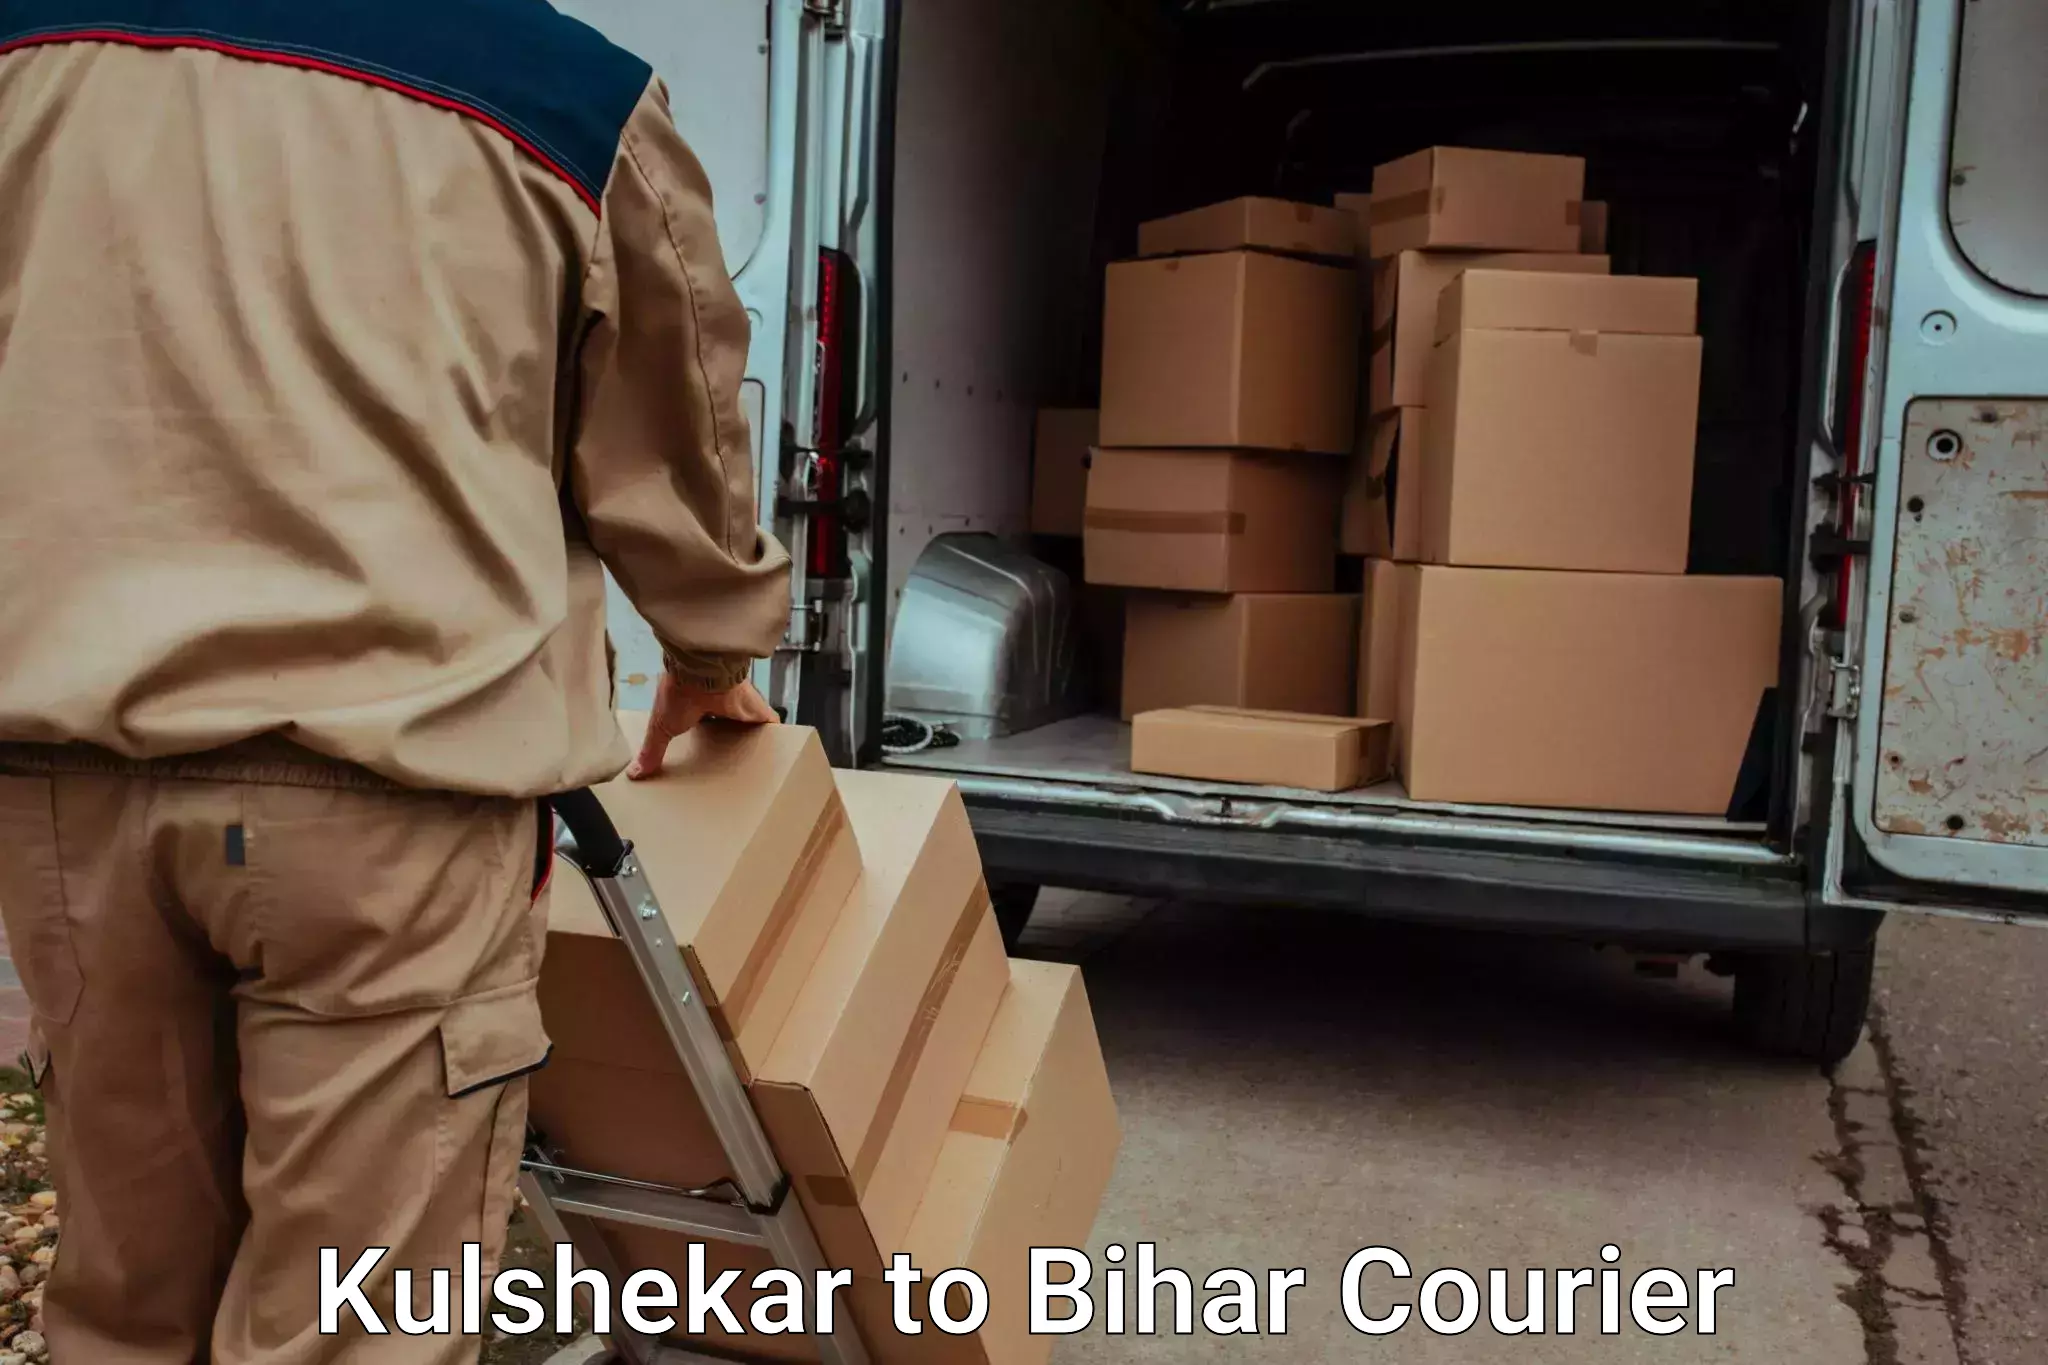 Skilled home shifting Kulshekar to Bihar